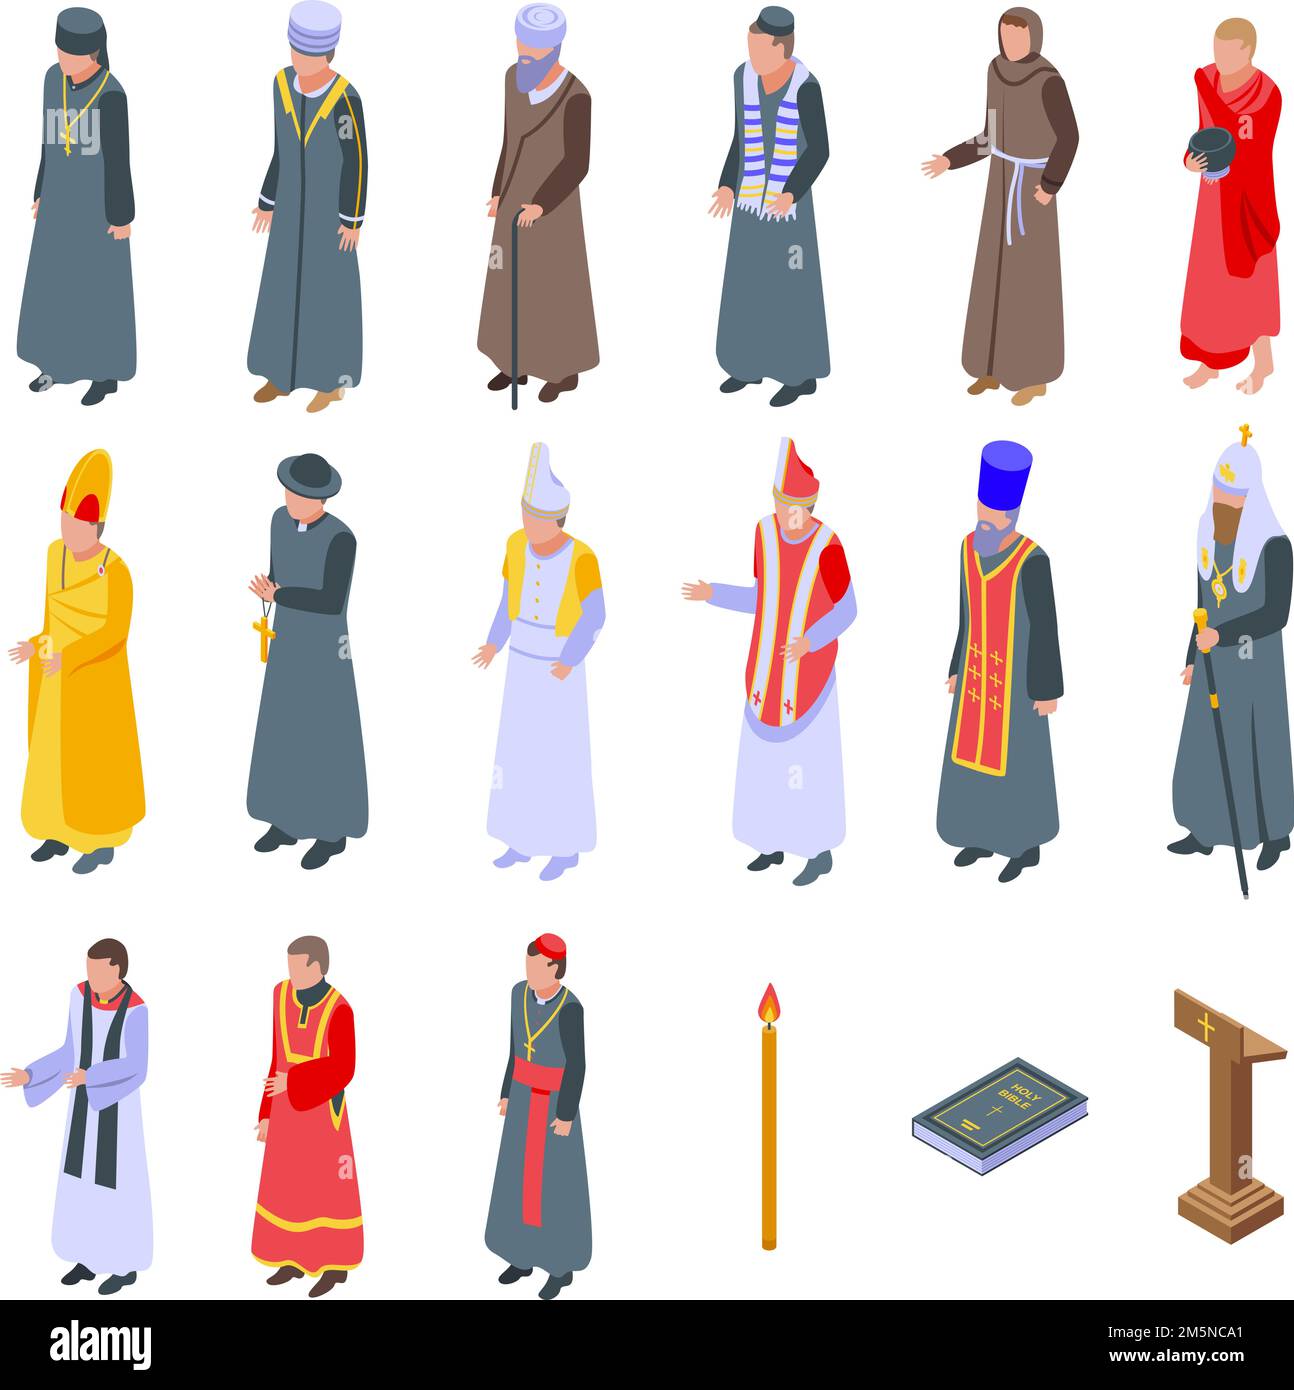 Icone prete impostate. Set isometrico di icone vettoriali prete per web design isolato su sfondo bianco Illustrazione Vettoriale